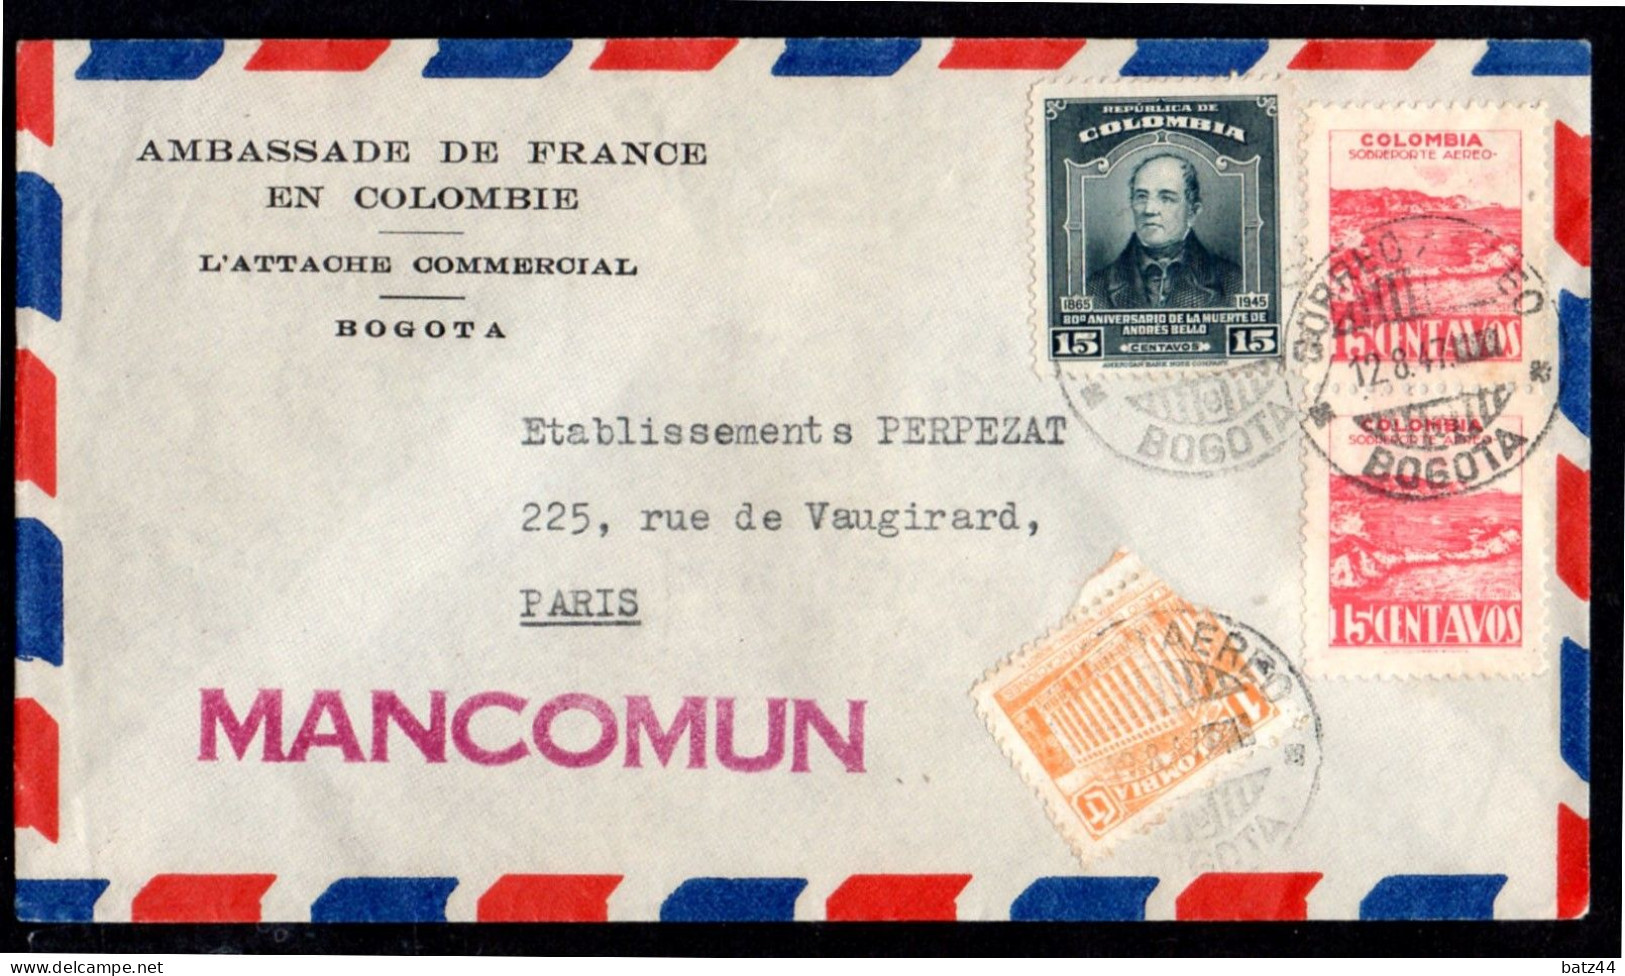 Colombie Colombia Enveloppe Cover Letter Lettre Bogota 12 8 47 Ambassade De France Pour Paris Griffe Linéaire Mancomum - Colombia